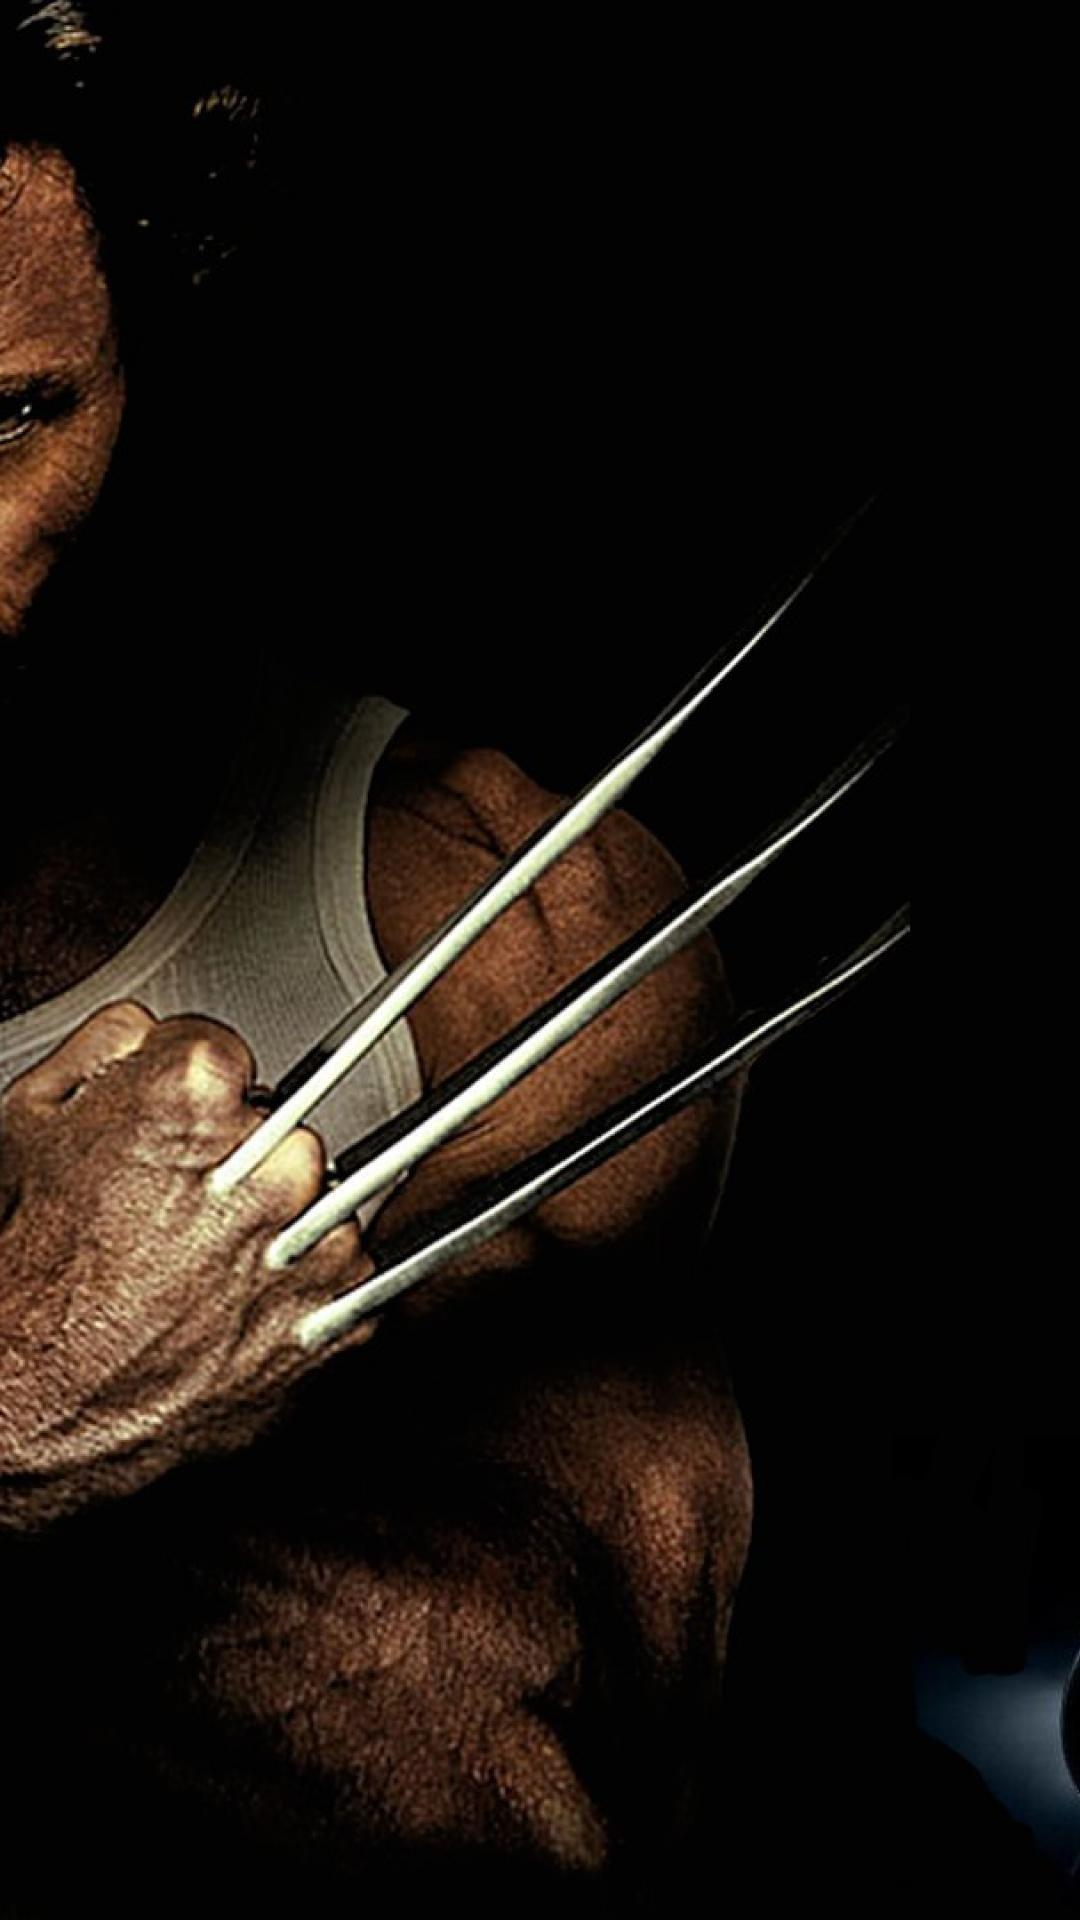 40 Gambar Wolverine Hd Wallpaper for Android terbaru 2020